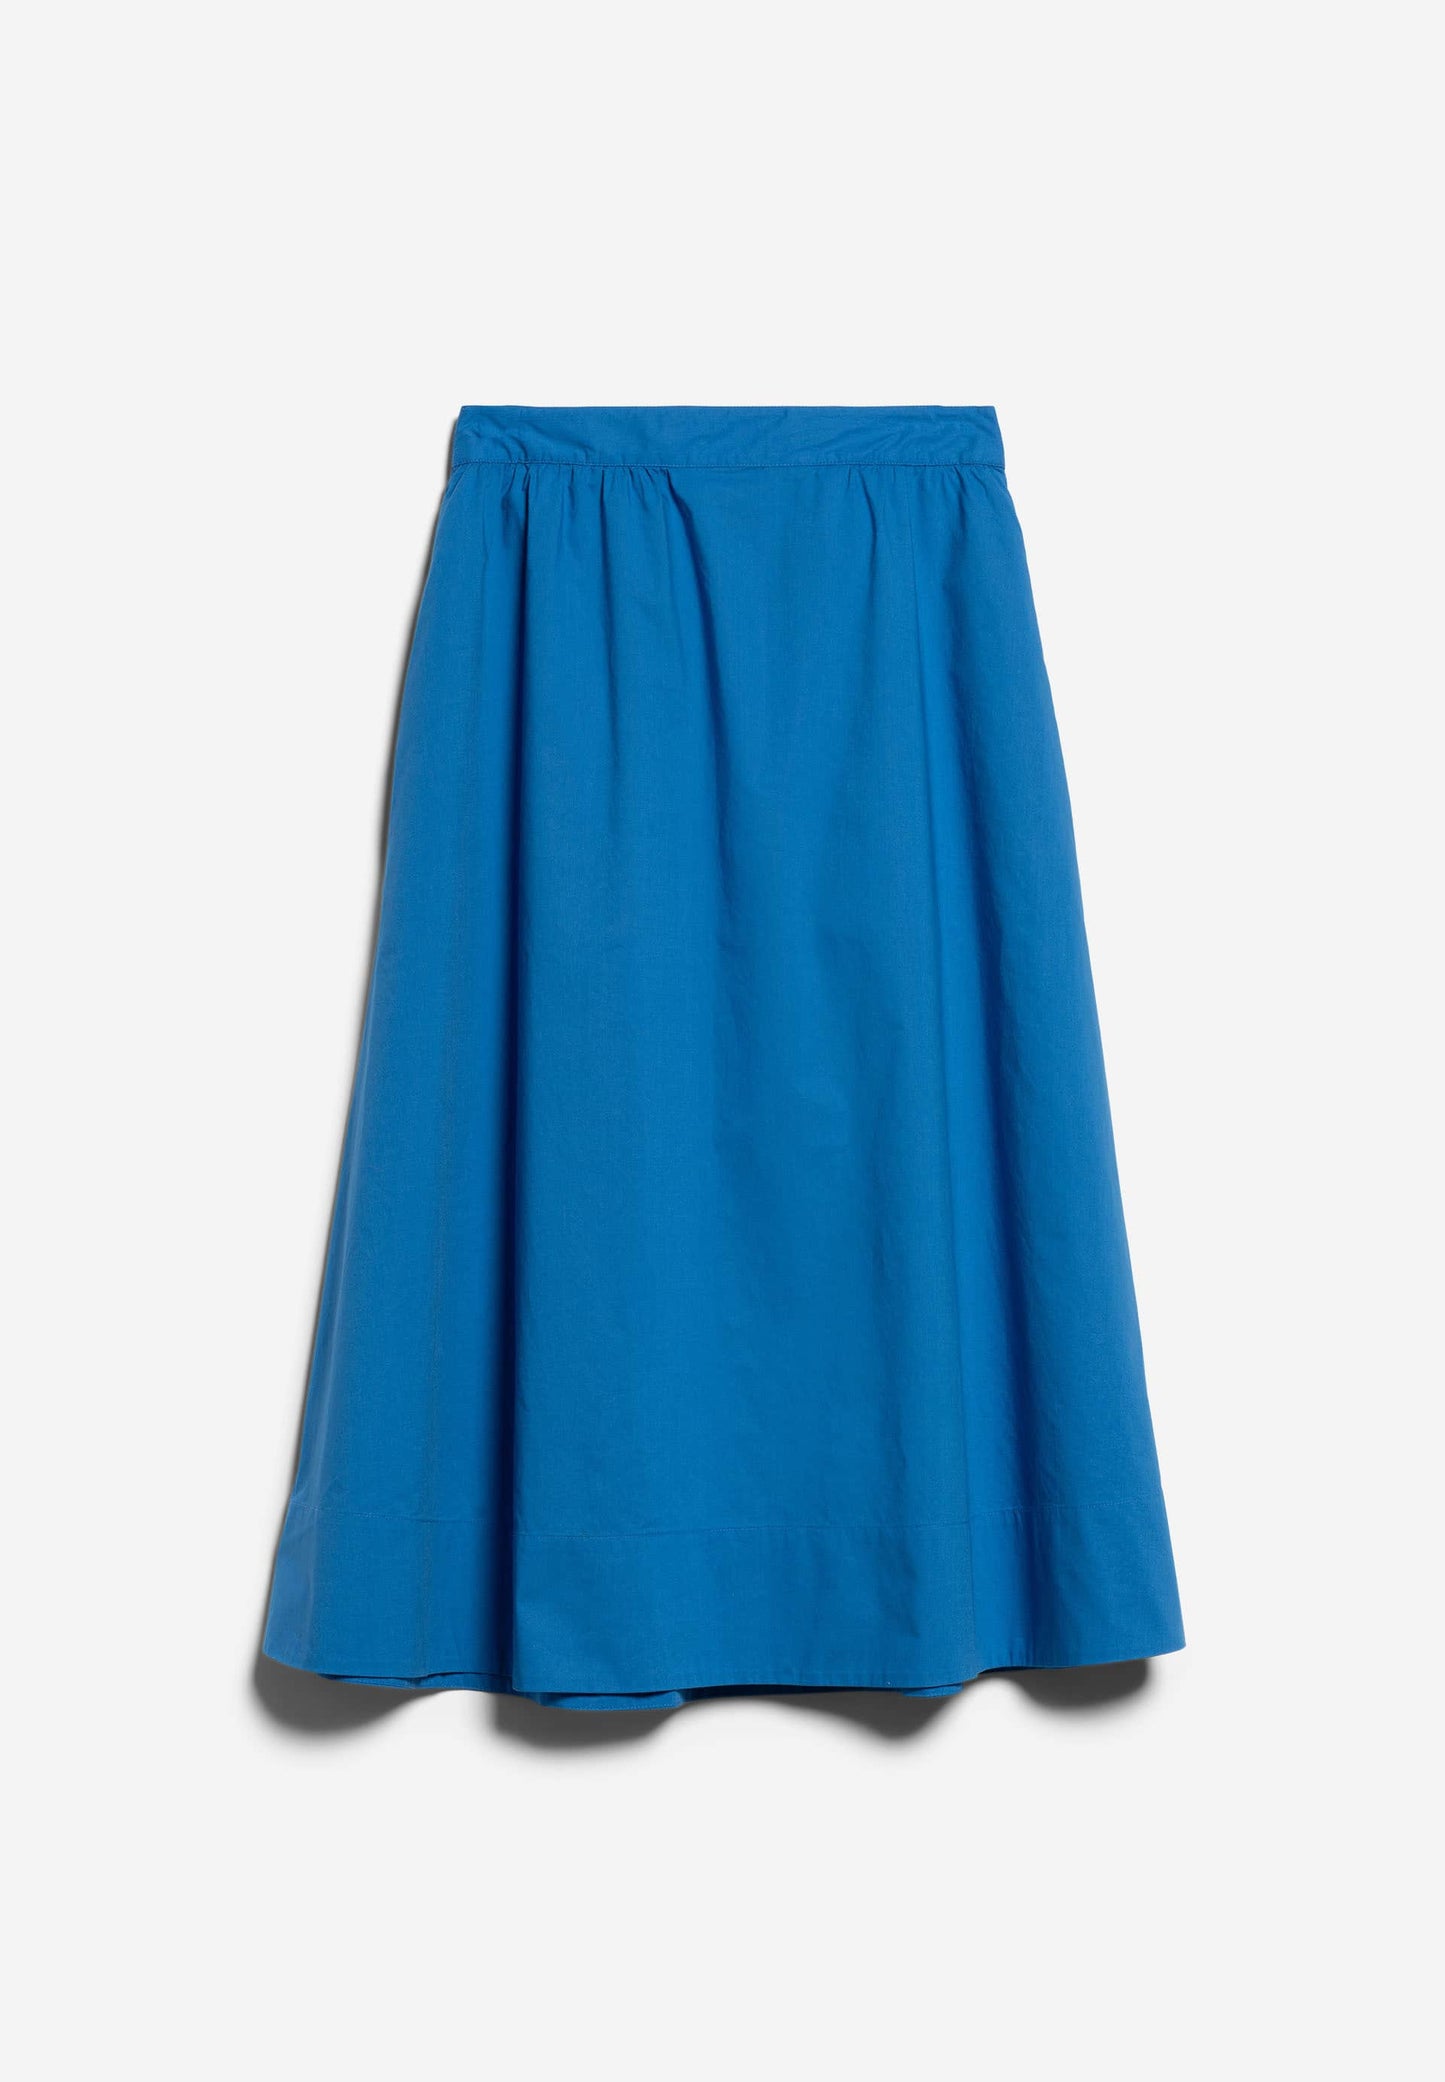 
                  
                    JASINAA Warm Blue Skirt
                  
                